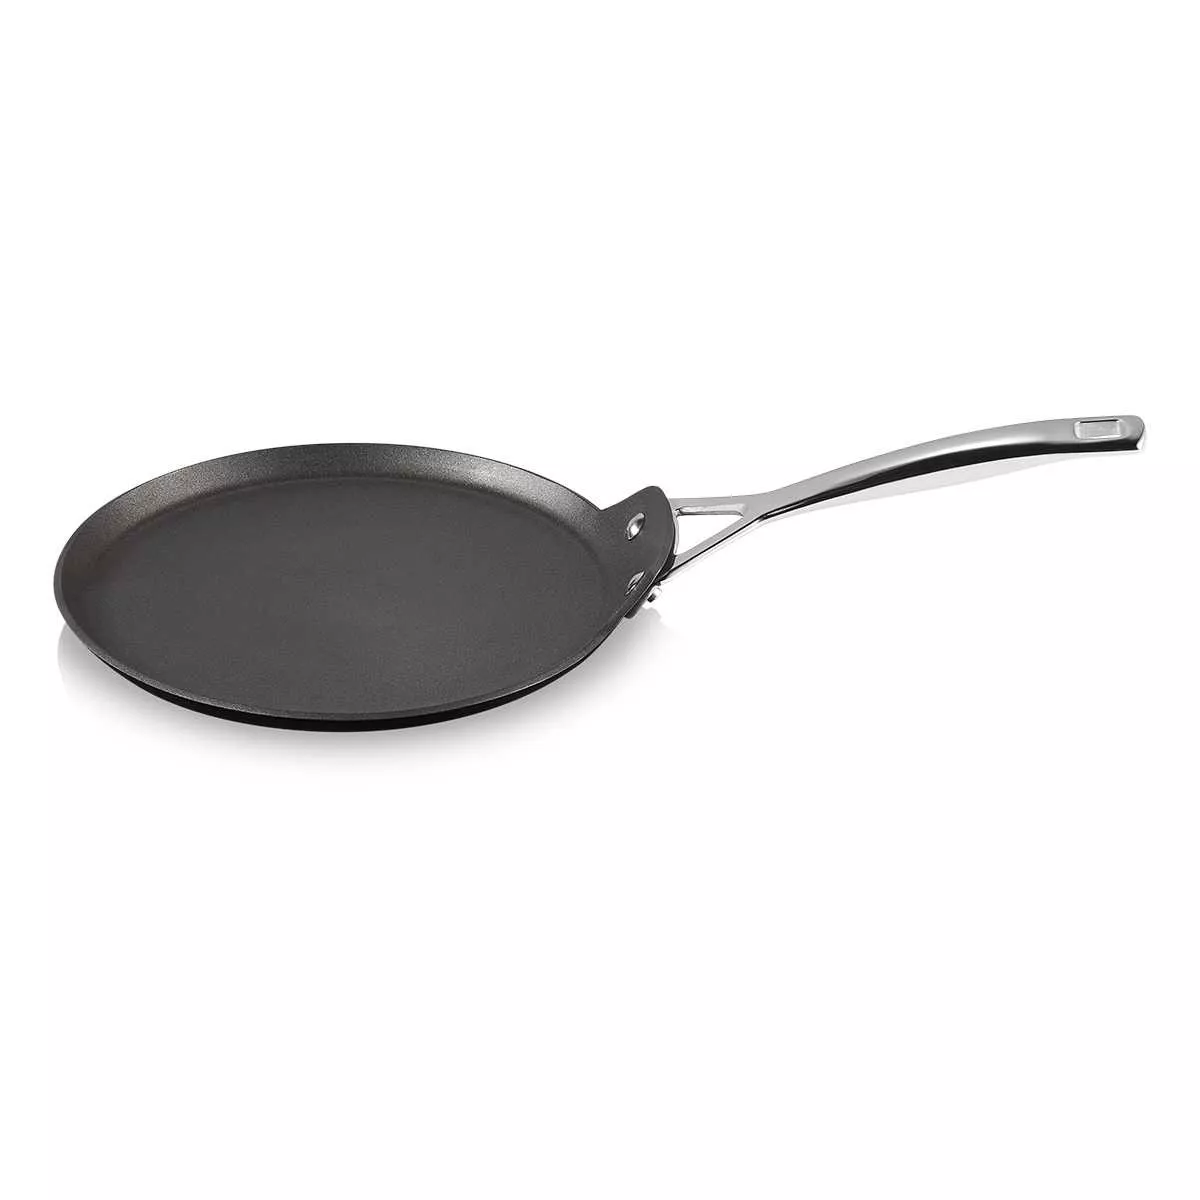 Сковорода блинная антипригарная Le Creuset Tns&Cast Alu Black, диаметр 28 см (51106280010002) - Фото nav 2